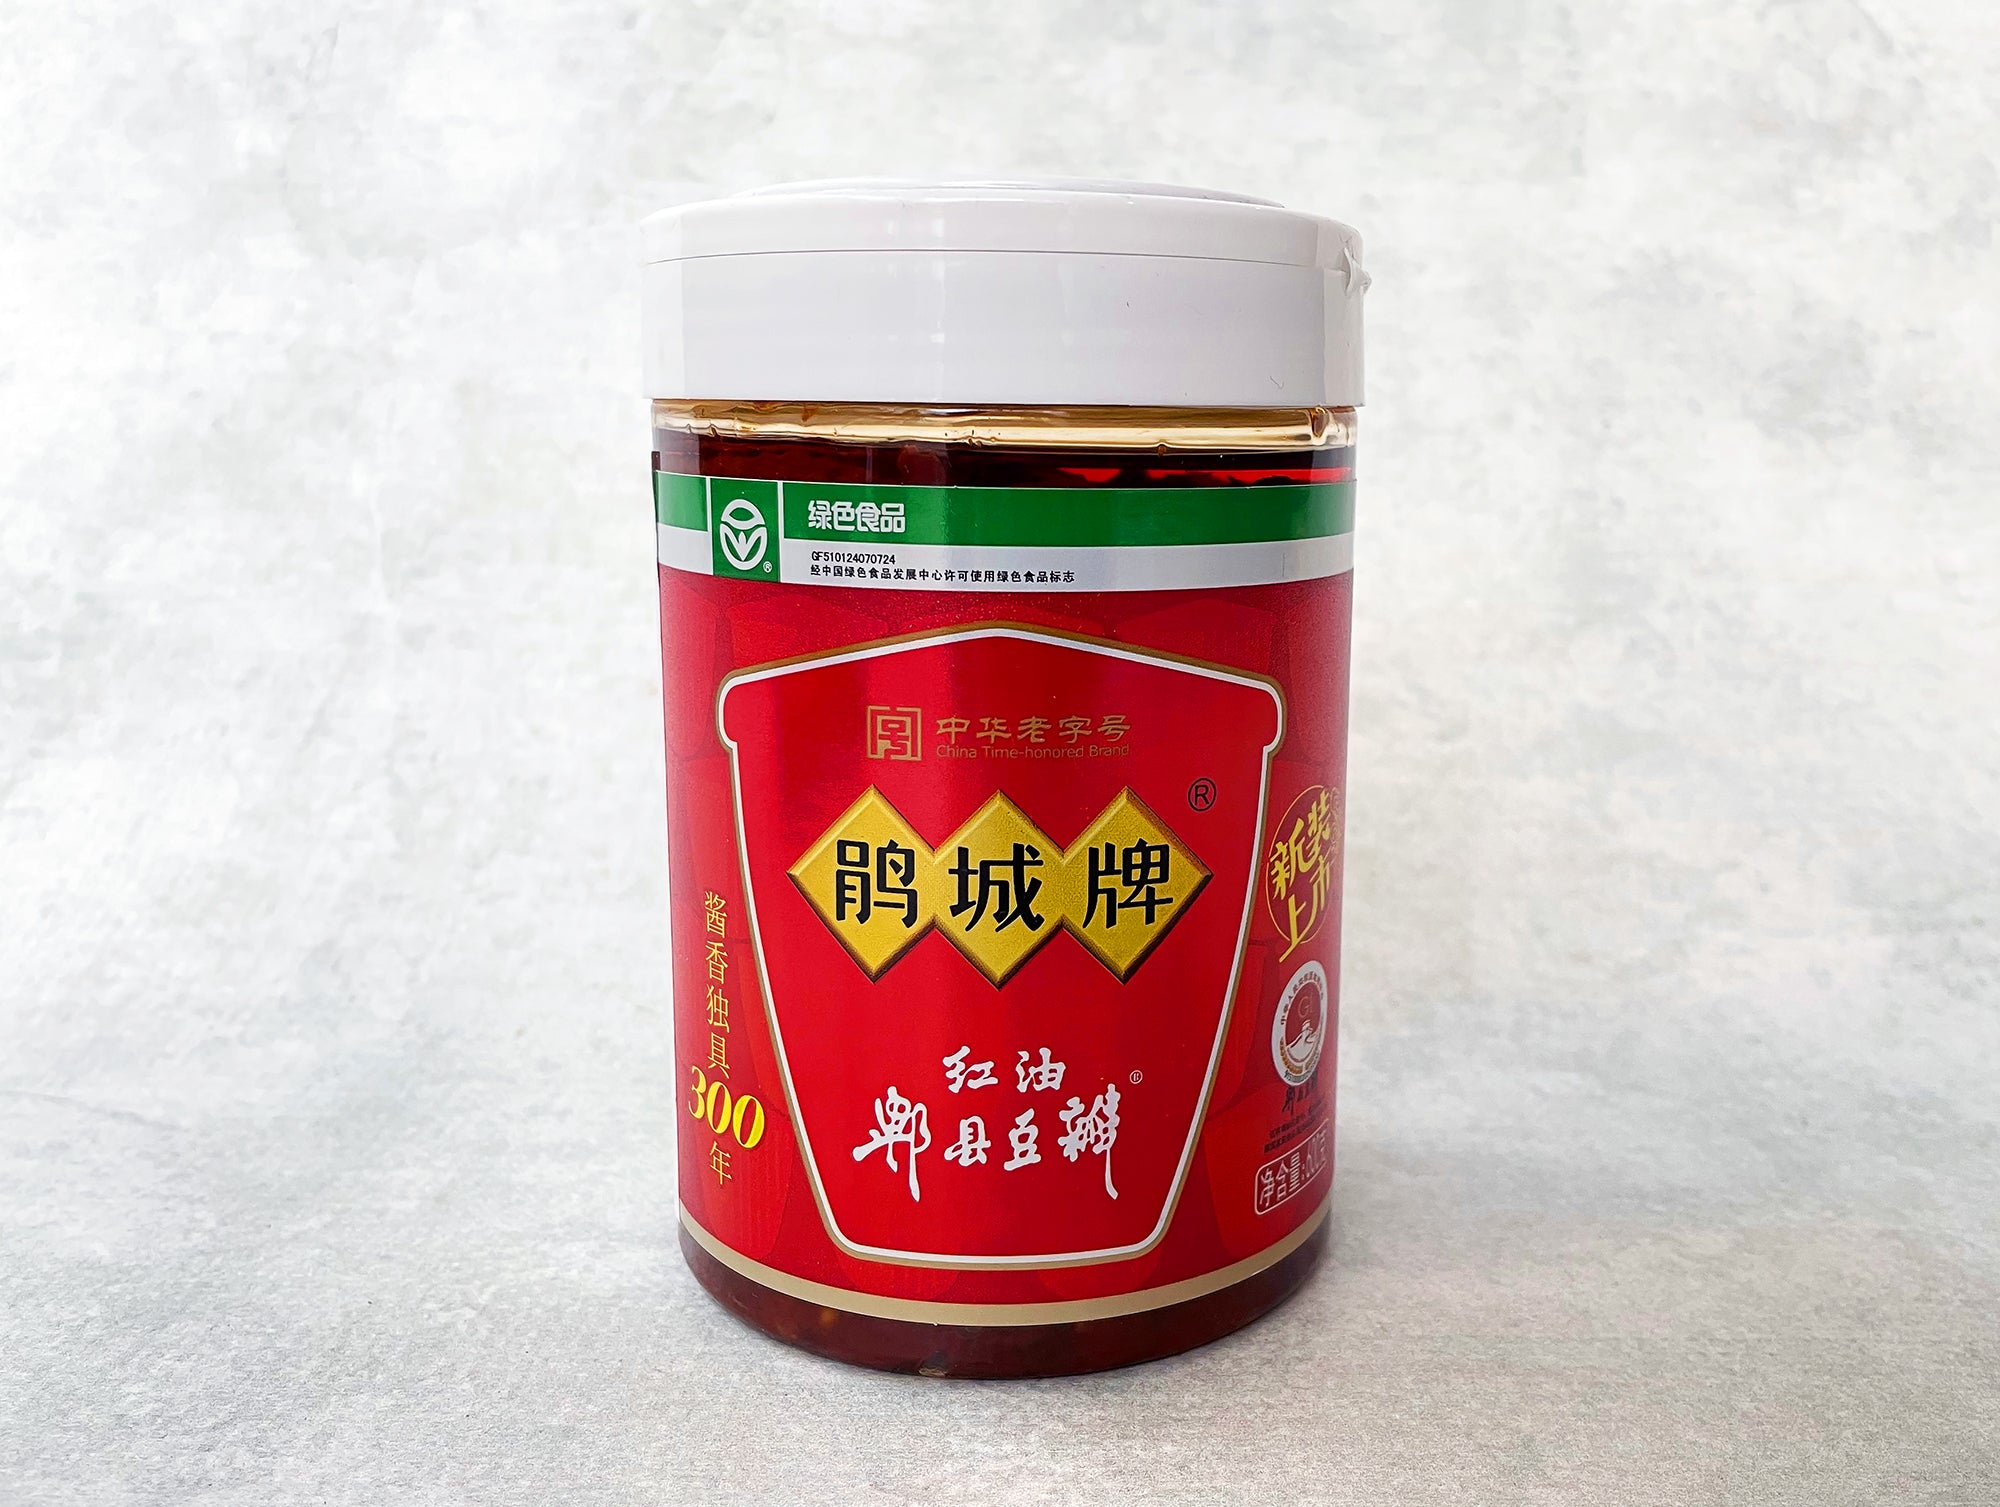 Pixian Red-Oil Broad Bean Paste (Juan Cheng Doubanjiang) - The Mala Market